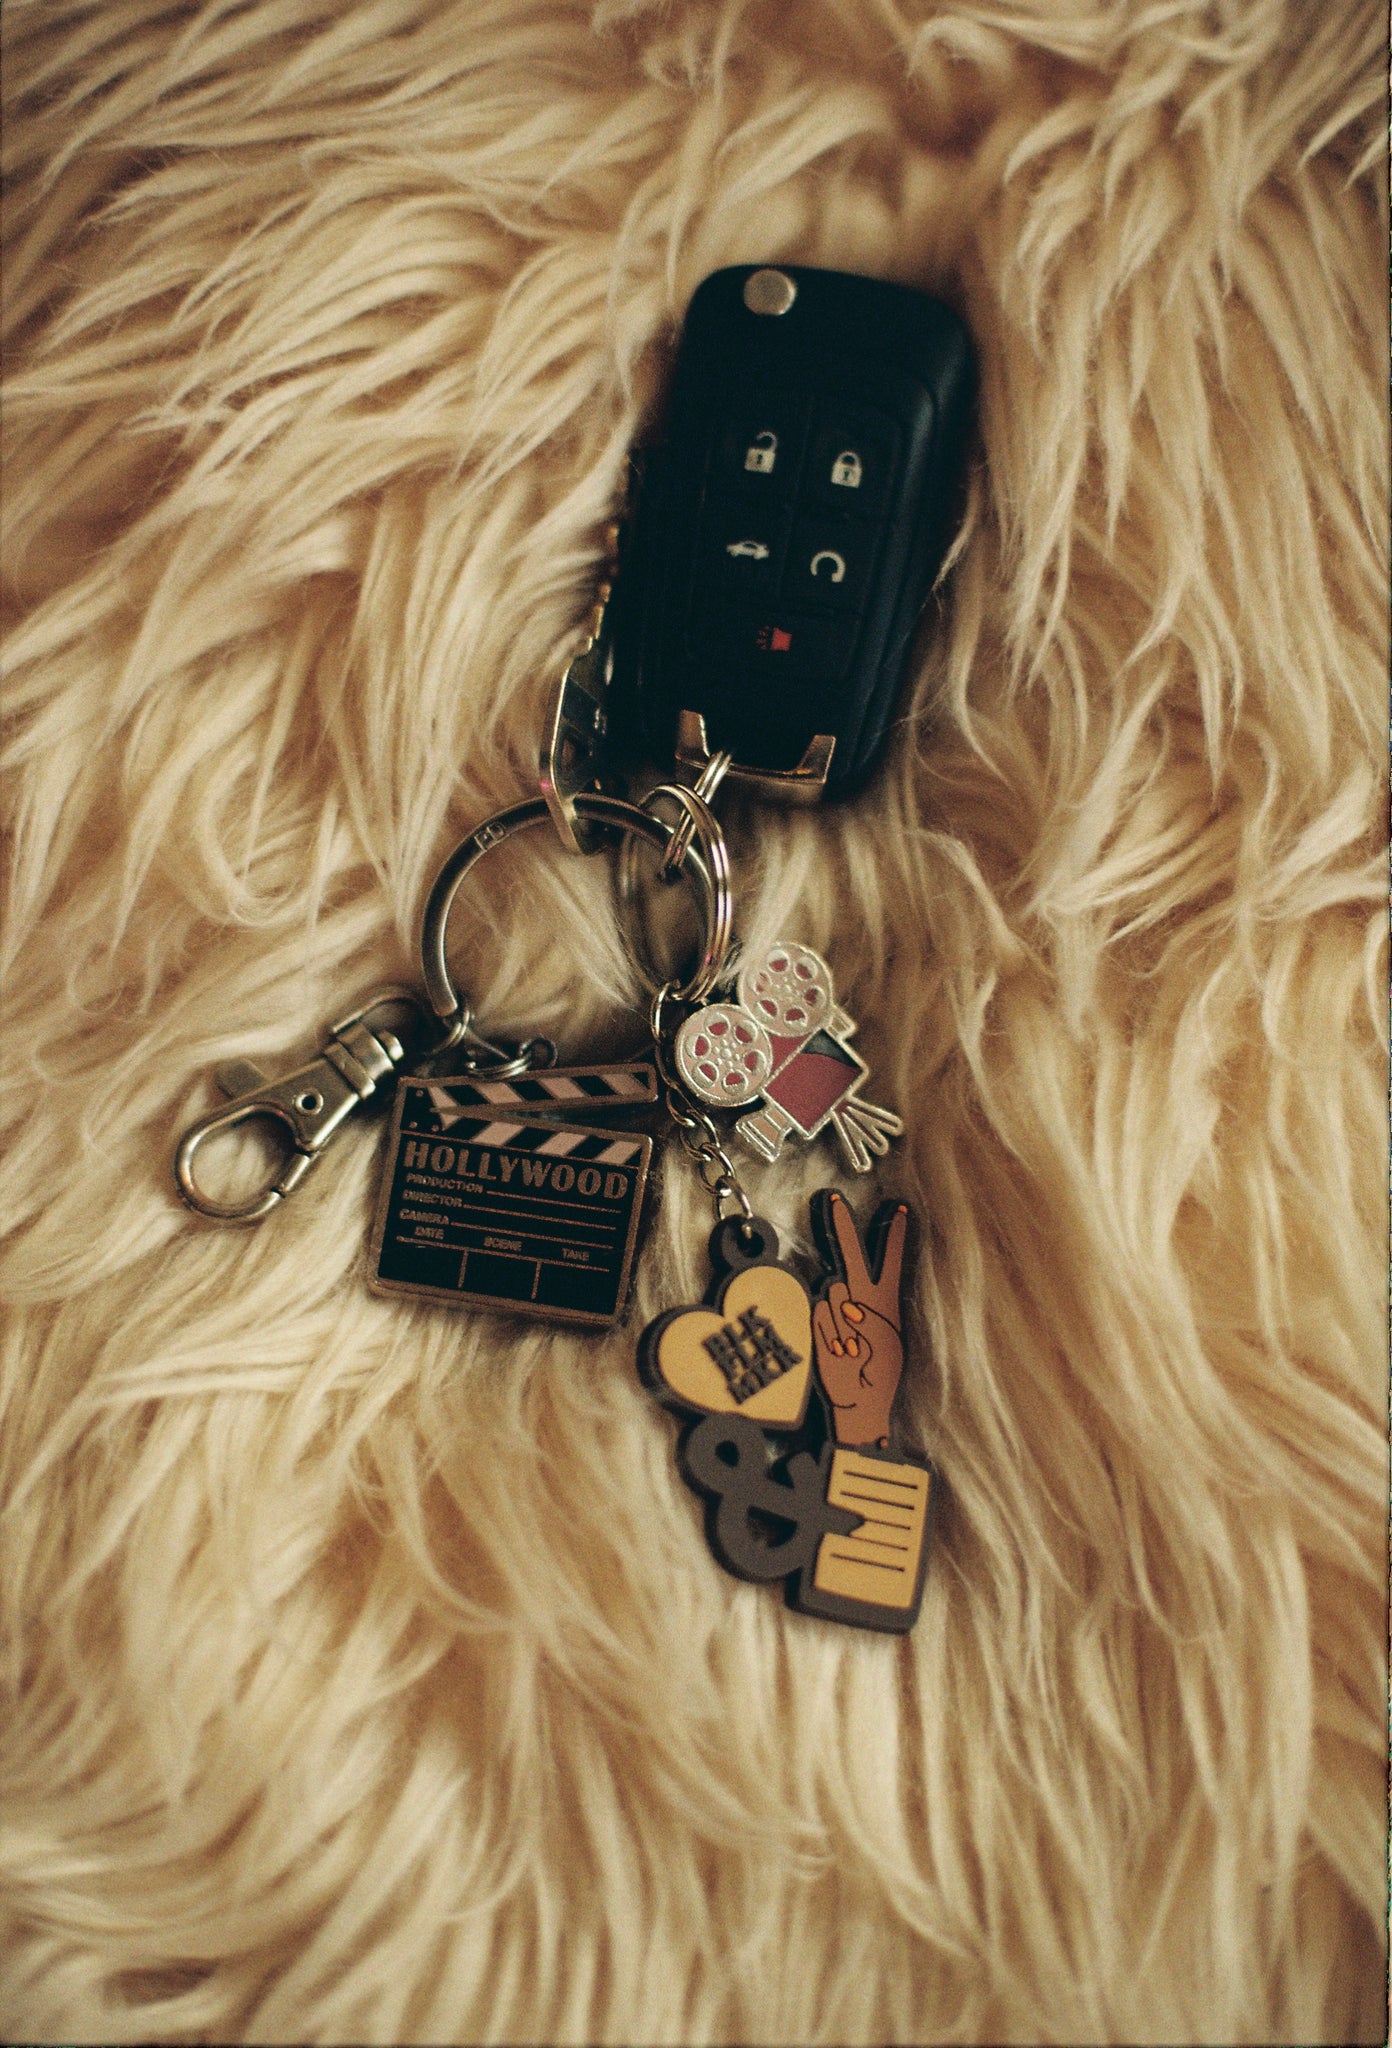 girly car keys pinterest